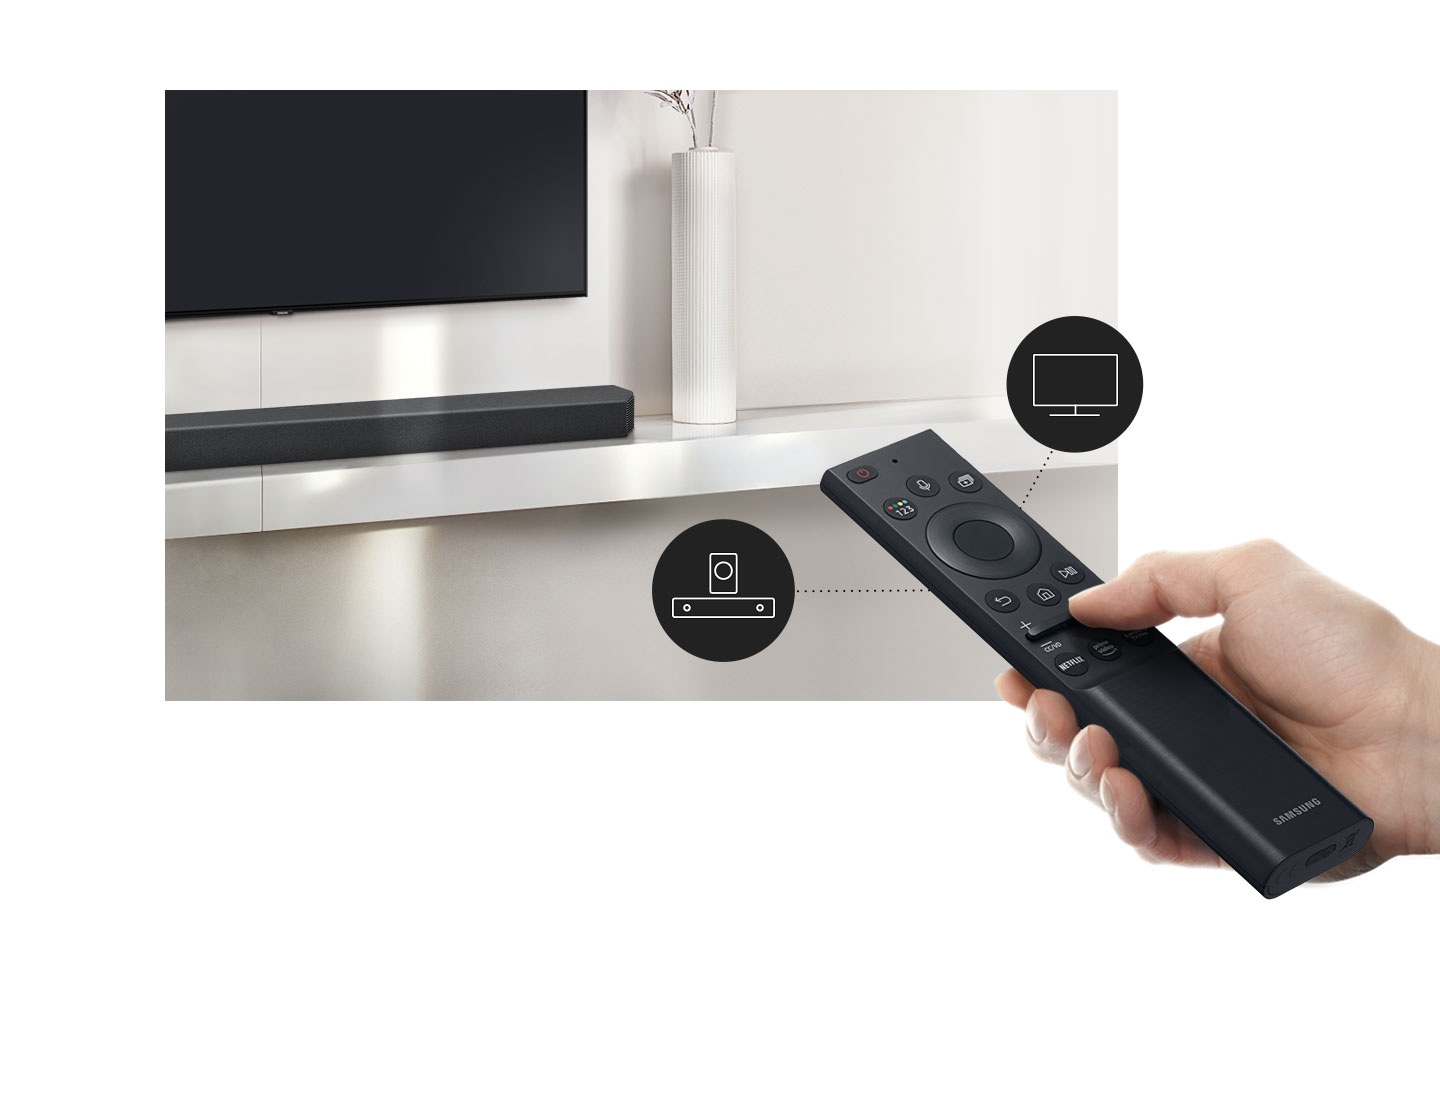 Un utilizator controlează atât funcțiiile soundbar-ului, cât și funcțiile televizorului cu telecomanda Samsung TV.